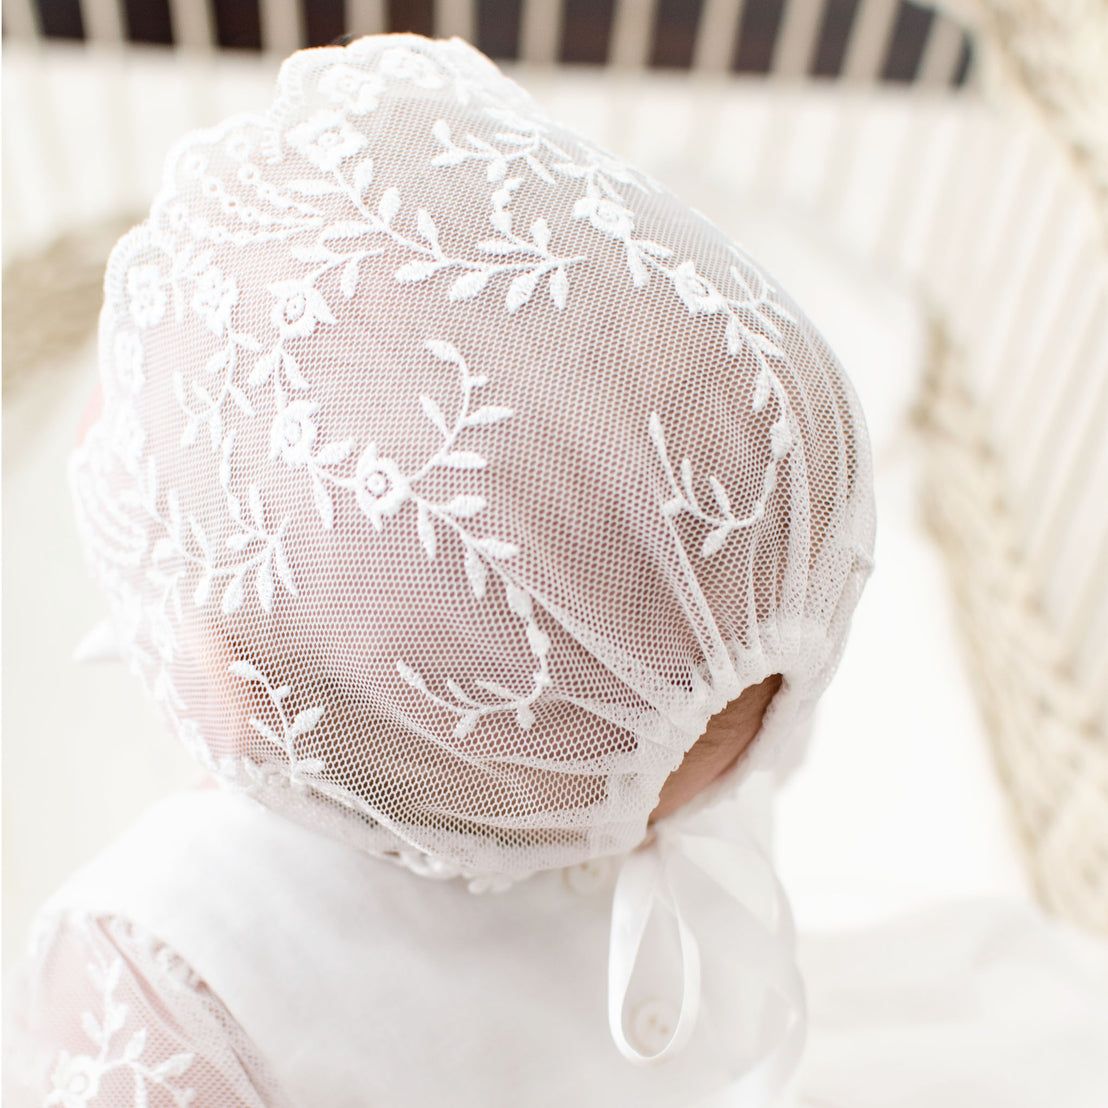 Details of the backside of the Ella lace baptism bonnet